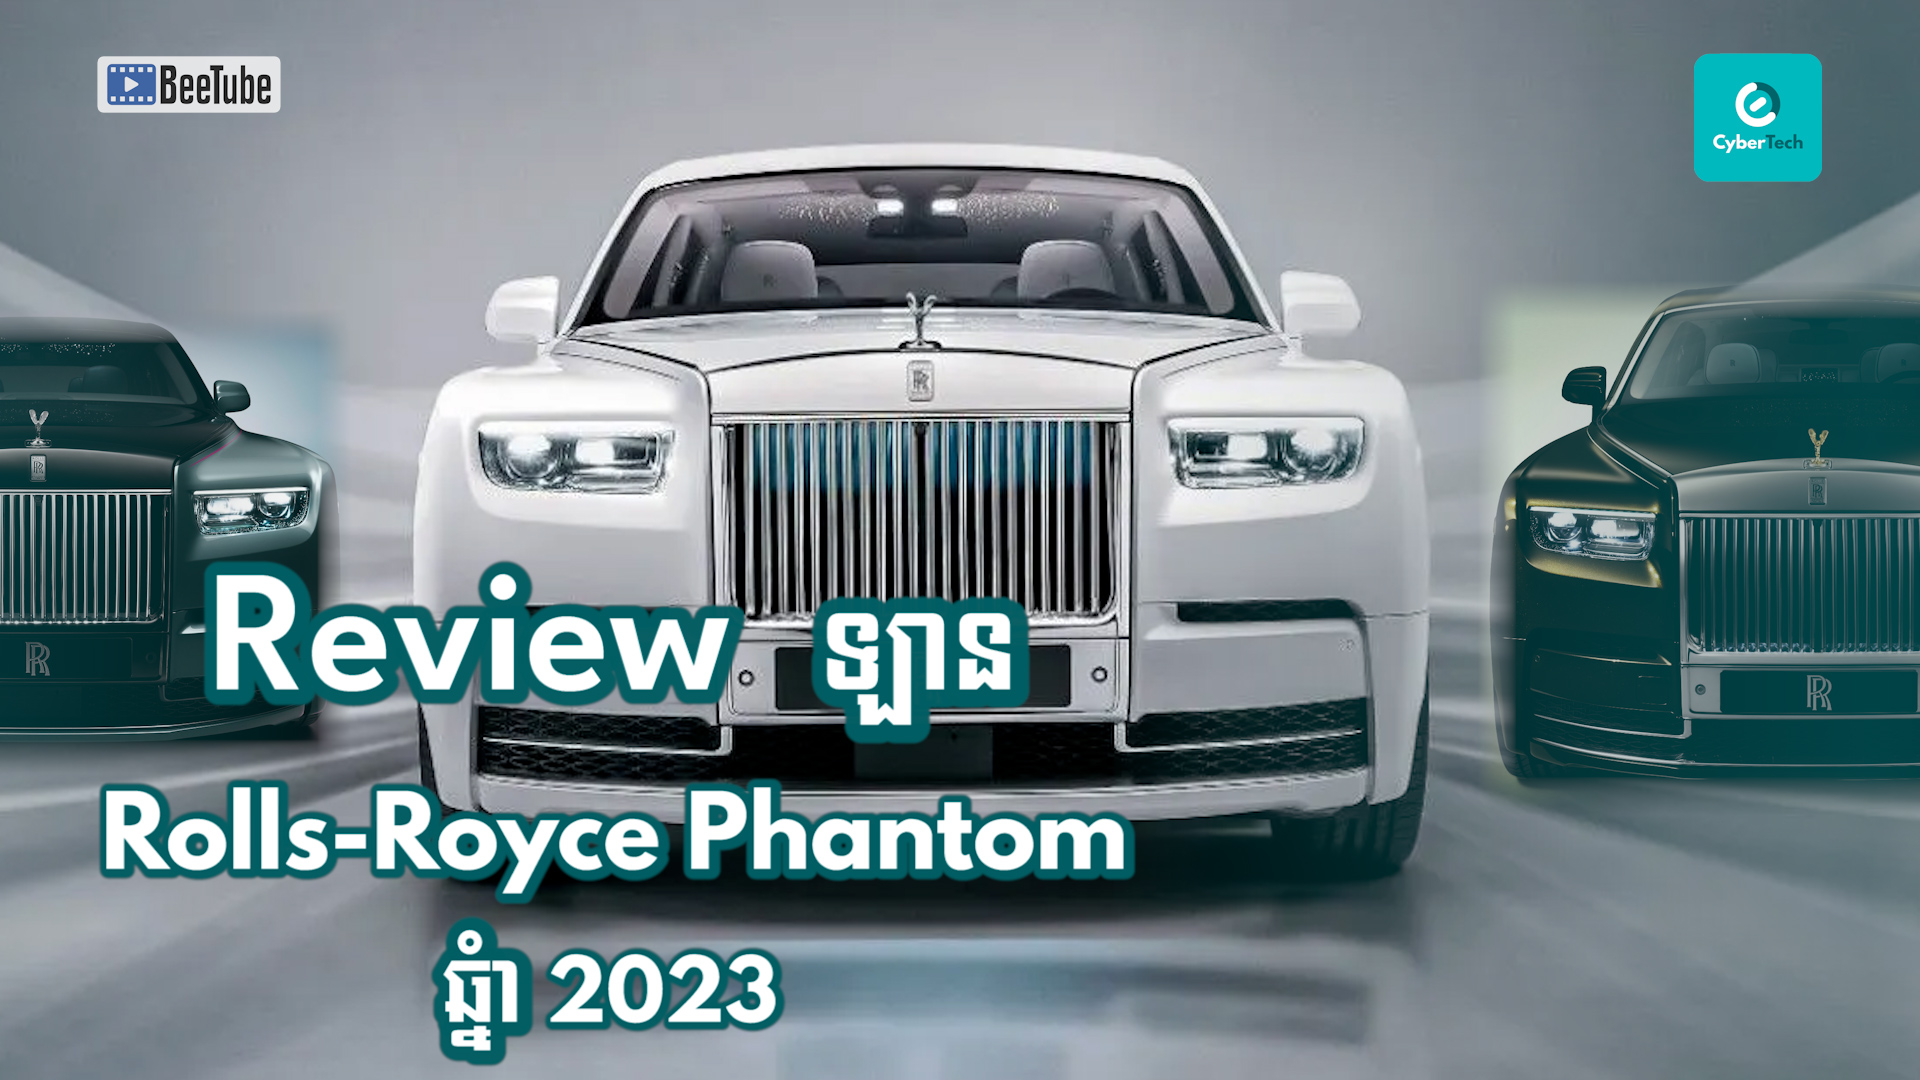 តោះ! មក Review ជាមួយឡាន Rolls-Royce Phantom ឆ្នំា 2023 ទាំងអស់គ្នា!